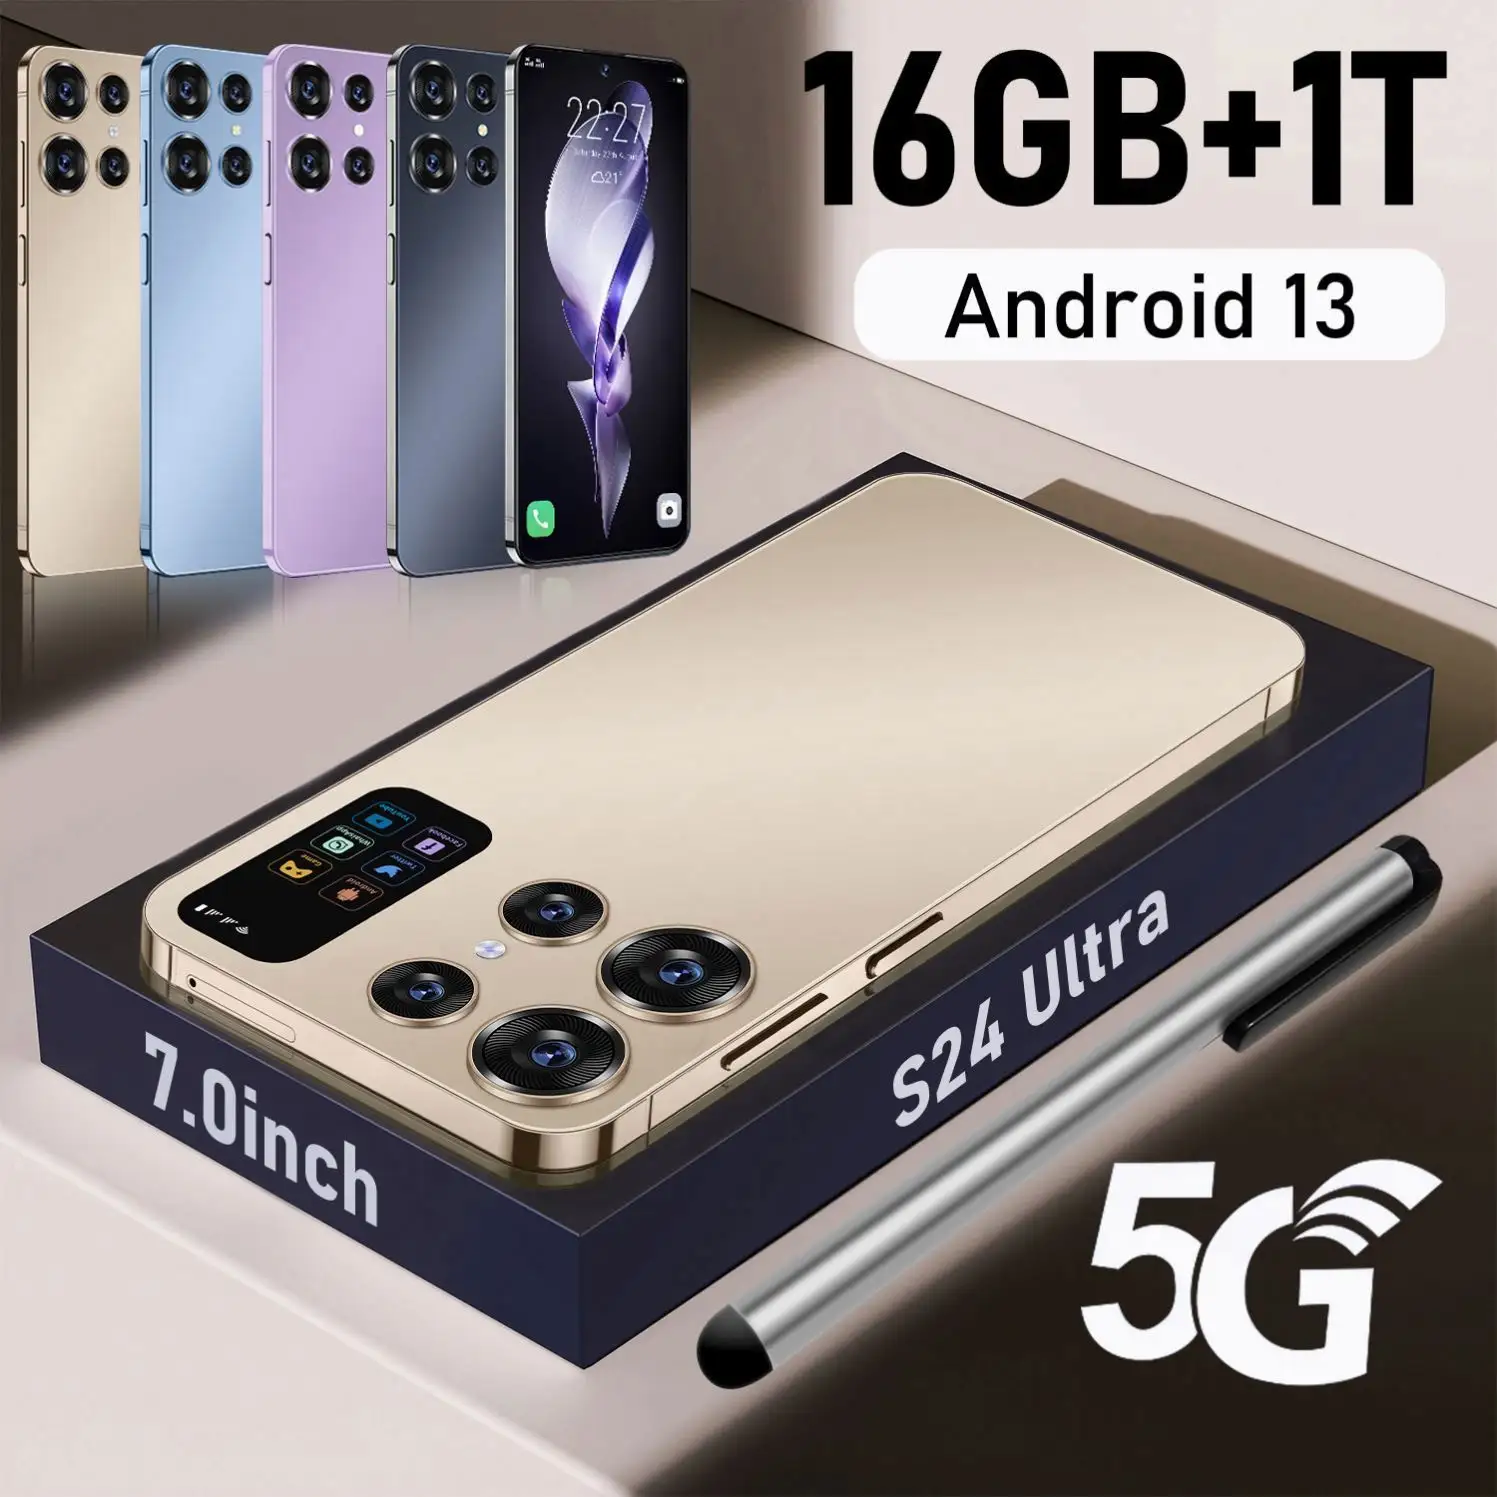 แชมป์ยอดขาย TD-SCDMA รุ่นใหม่: Celular Pro 5G Android 13 รุ่น N Glo S24 Ultra